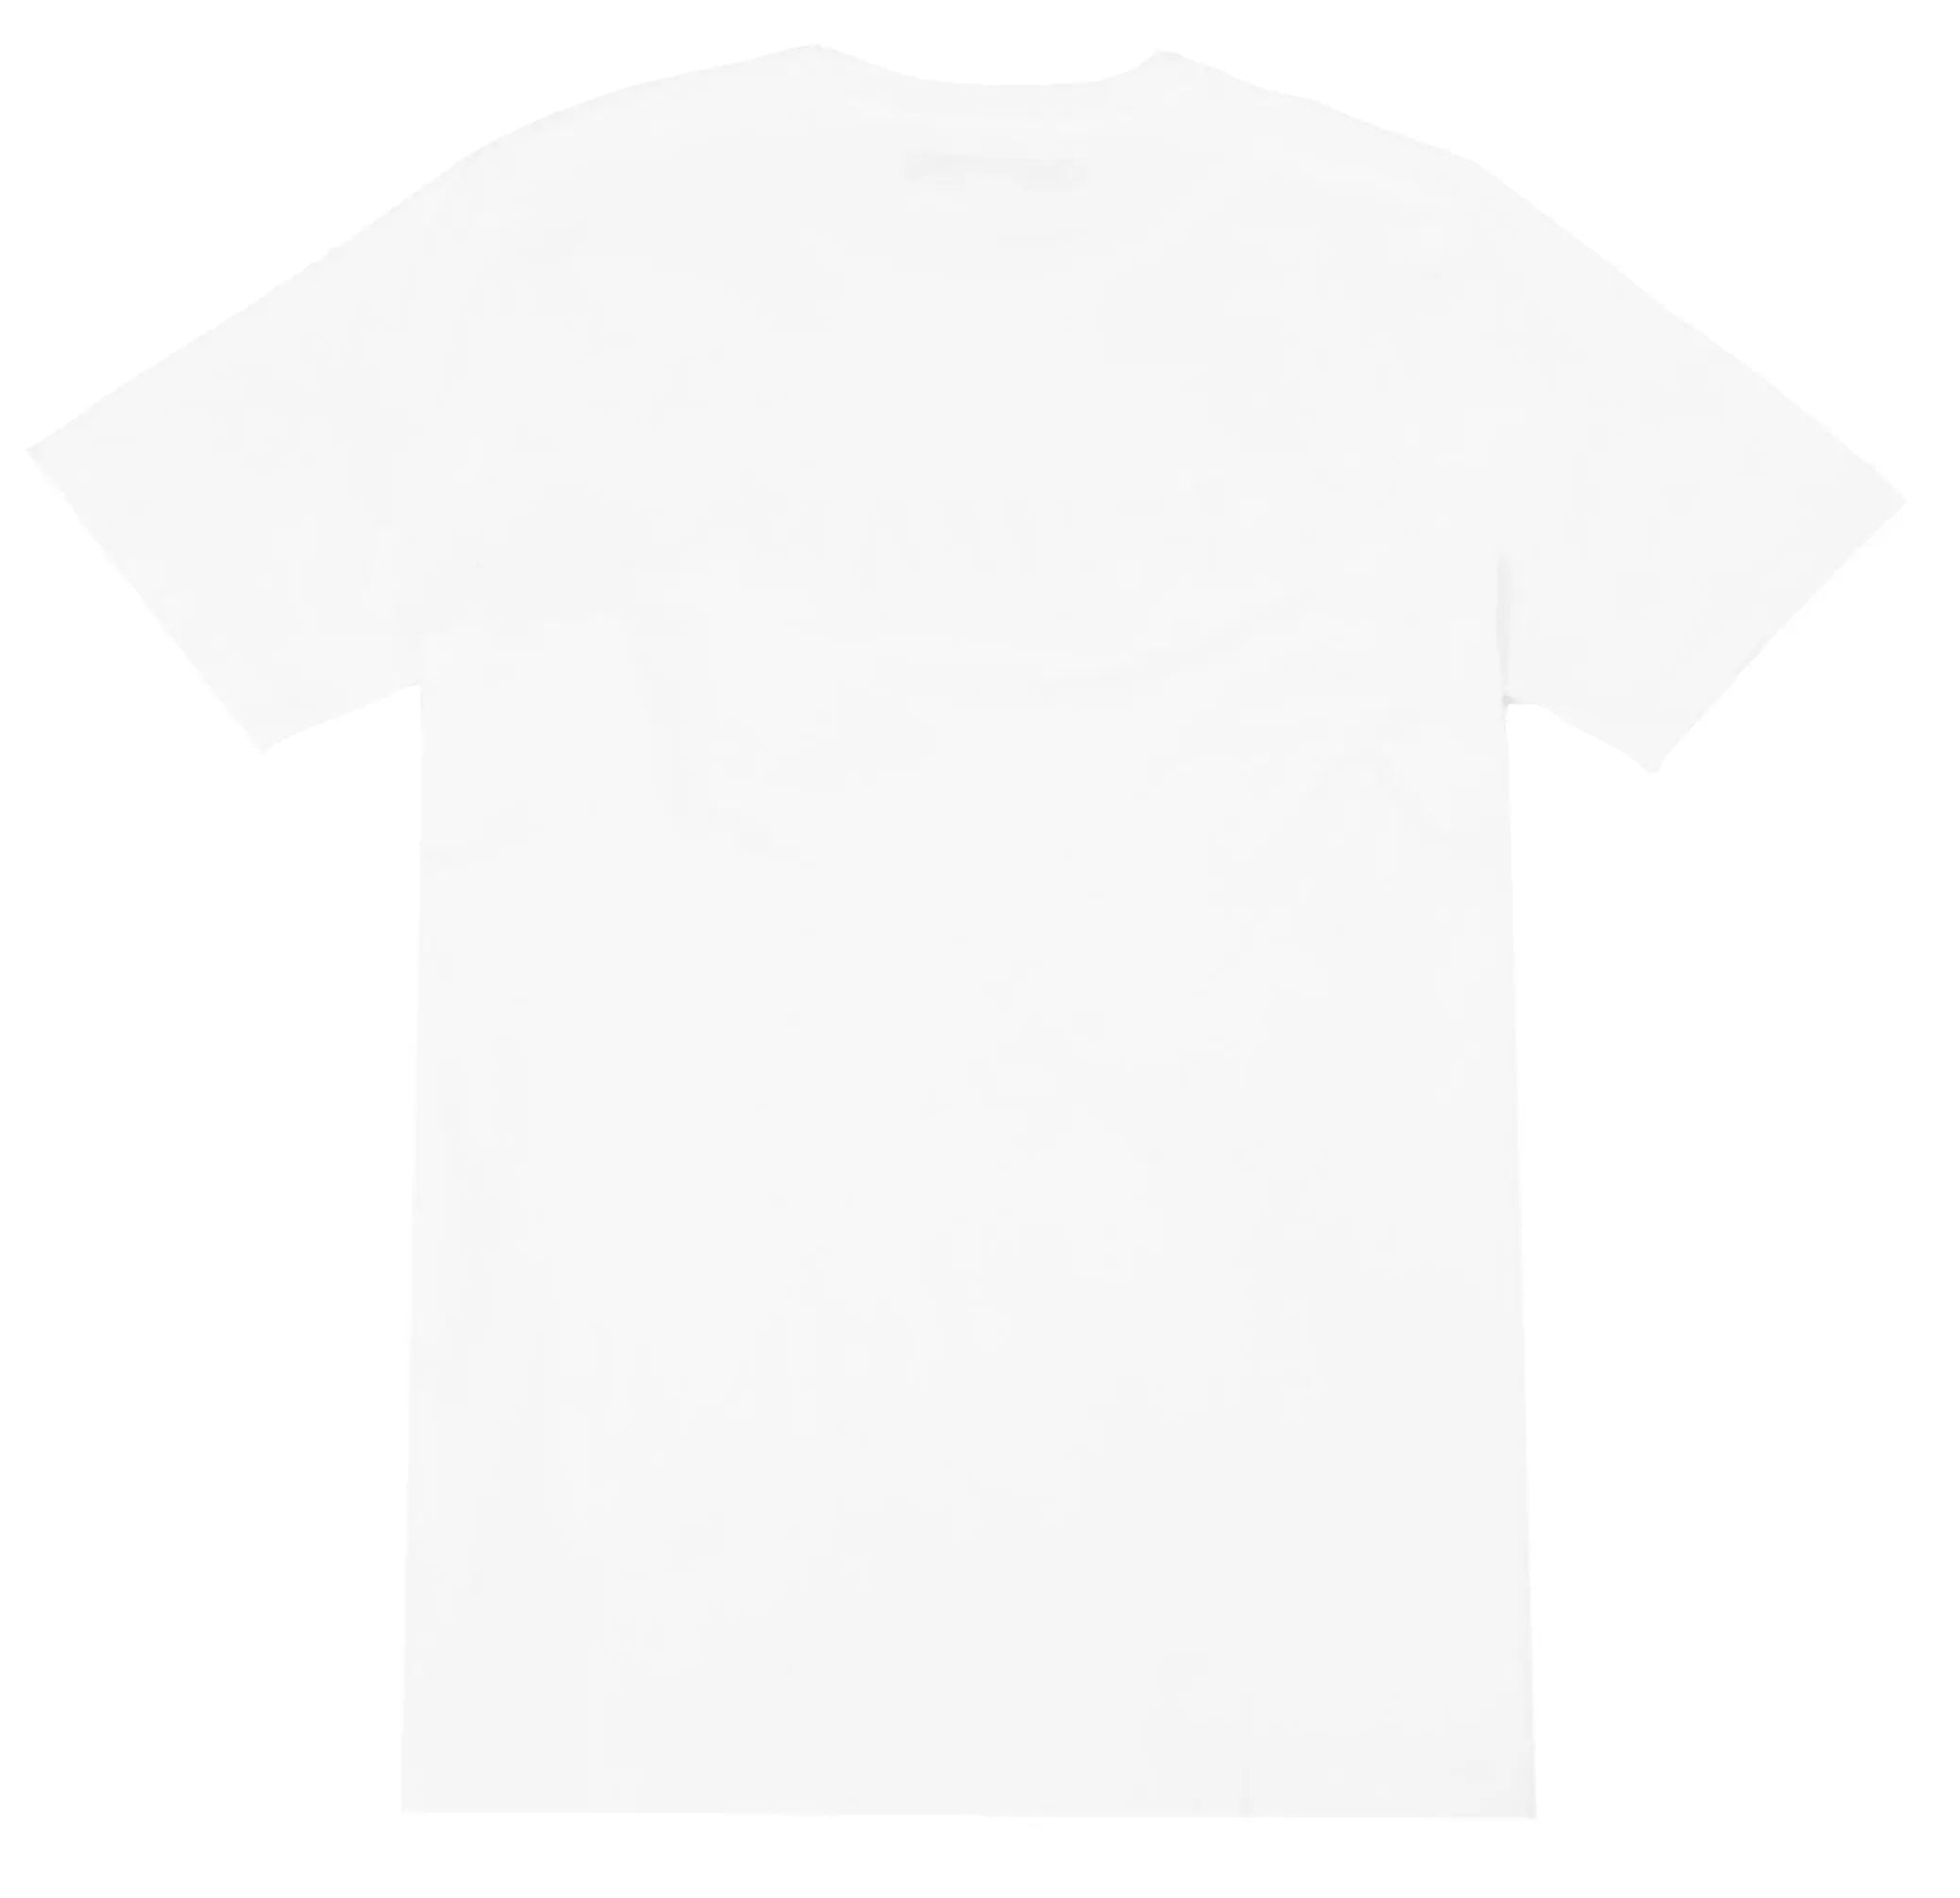 Cult Of Individuality Basic Logo 'HVMAN' White T-Shirt HVMAN